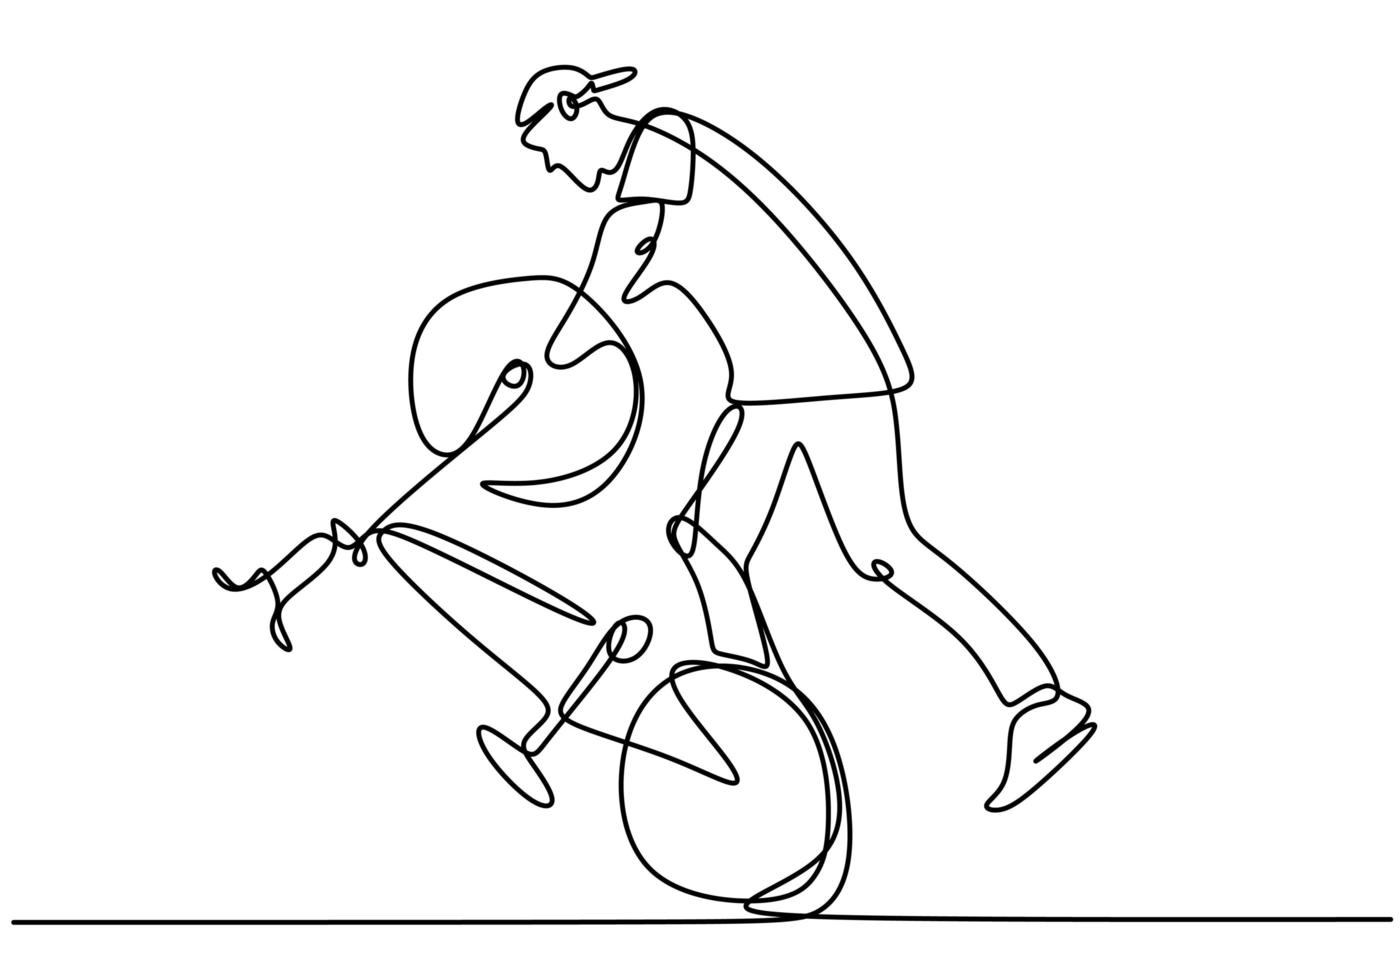 unico disegno a linea continua di giovane ciclista mostra stand freestyle su una bicicletta. trucco estremamente rischioso. una linea disegnare illustrazione vettoriale di design per il freestyle